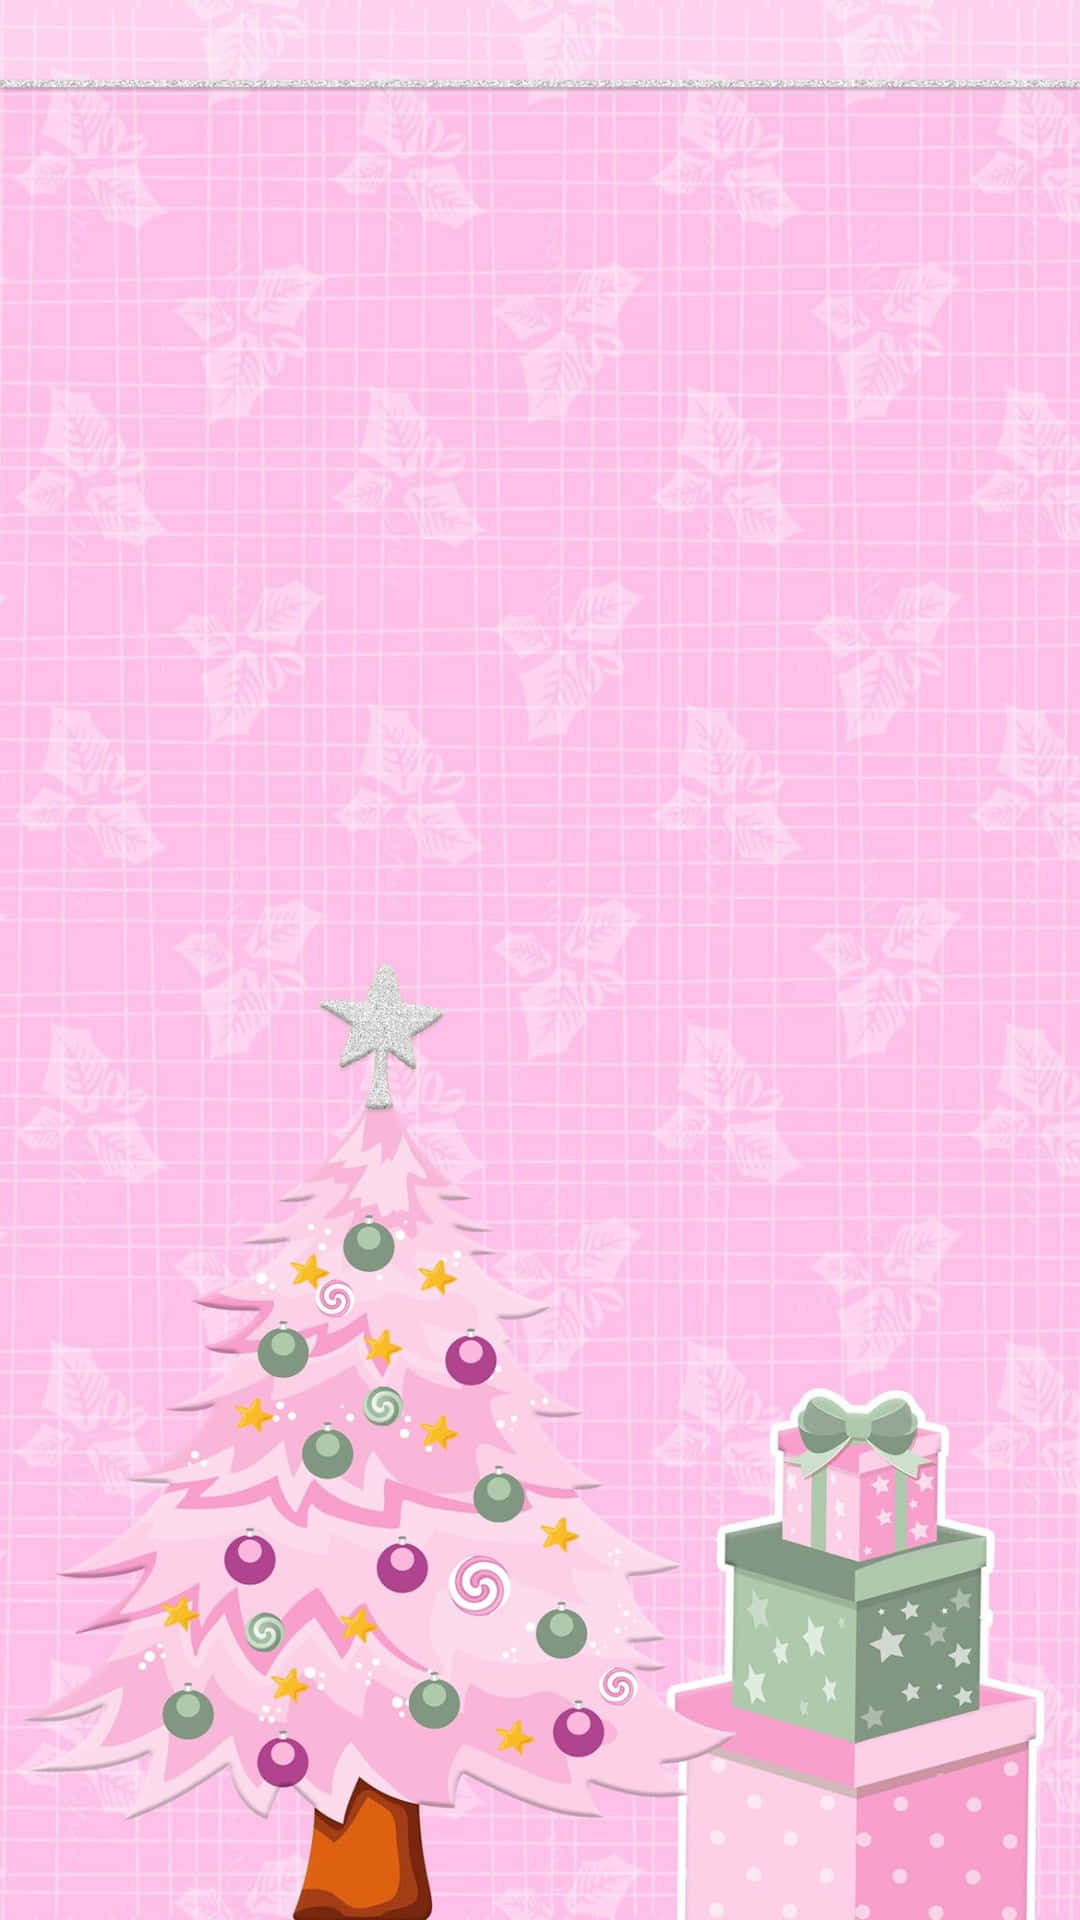 Spred glæden af ferie sæsonen med dette søde pink julebillede. Wallpaper